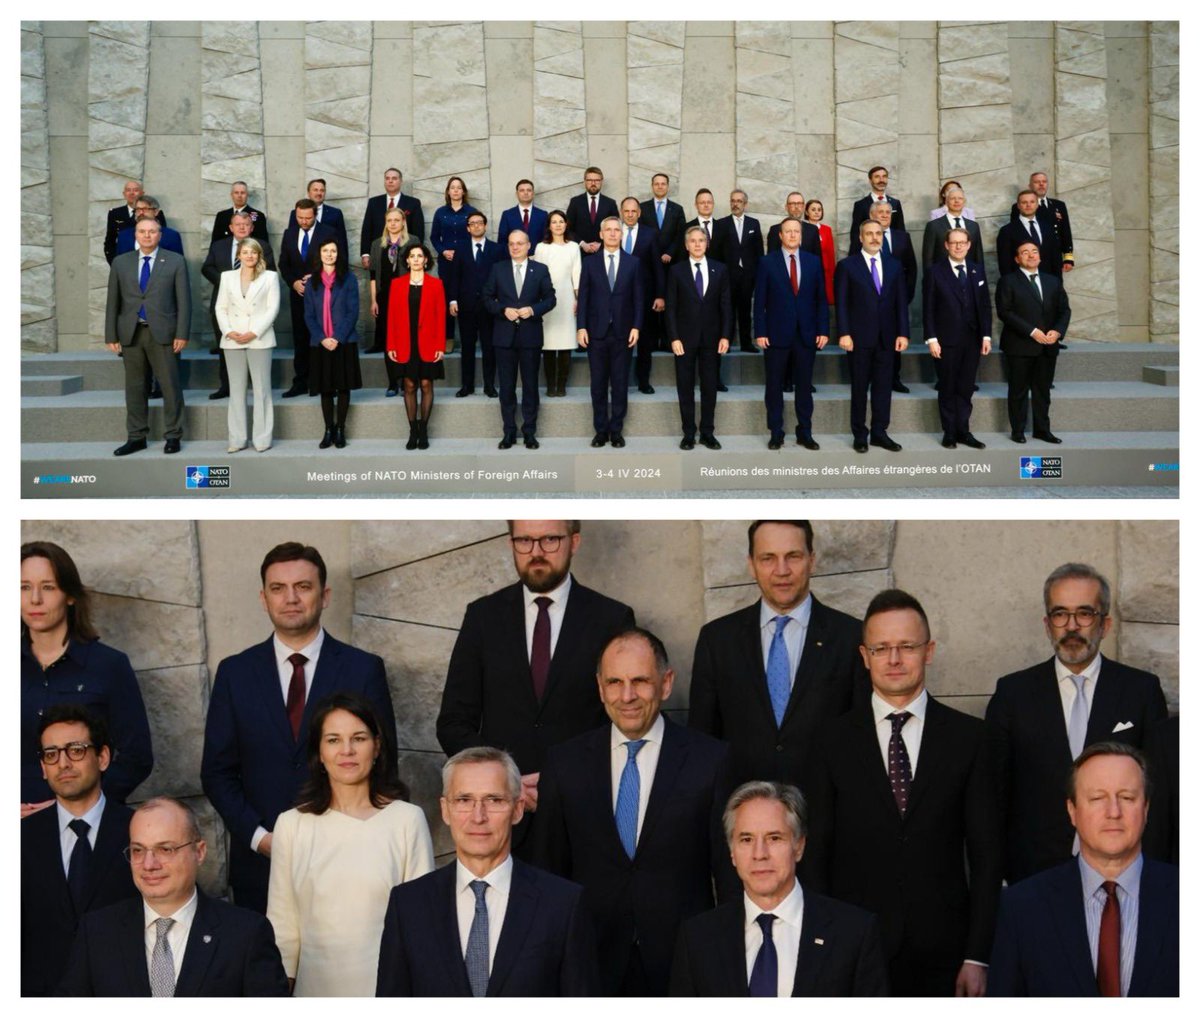 📸 Μeeting of #NATO Ministers of Foreign Affairs #ForMin - Welcome Sweden 🇸🇪 📸 Σύνοδος Υπουργών Εξωτερικών των 32 κρατών μελών του #ΝΑΤΟ #WeAreNATO #1NATO75years